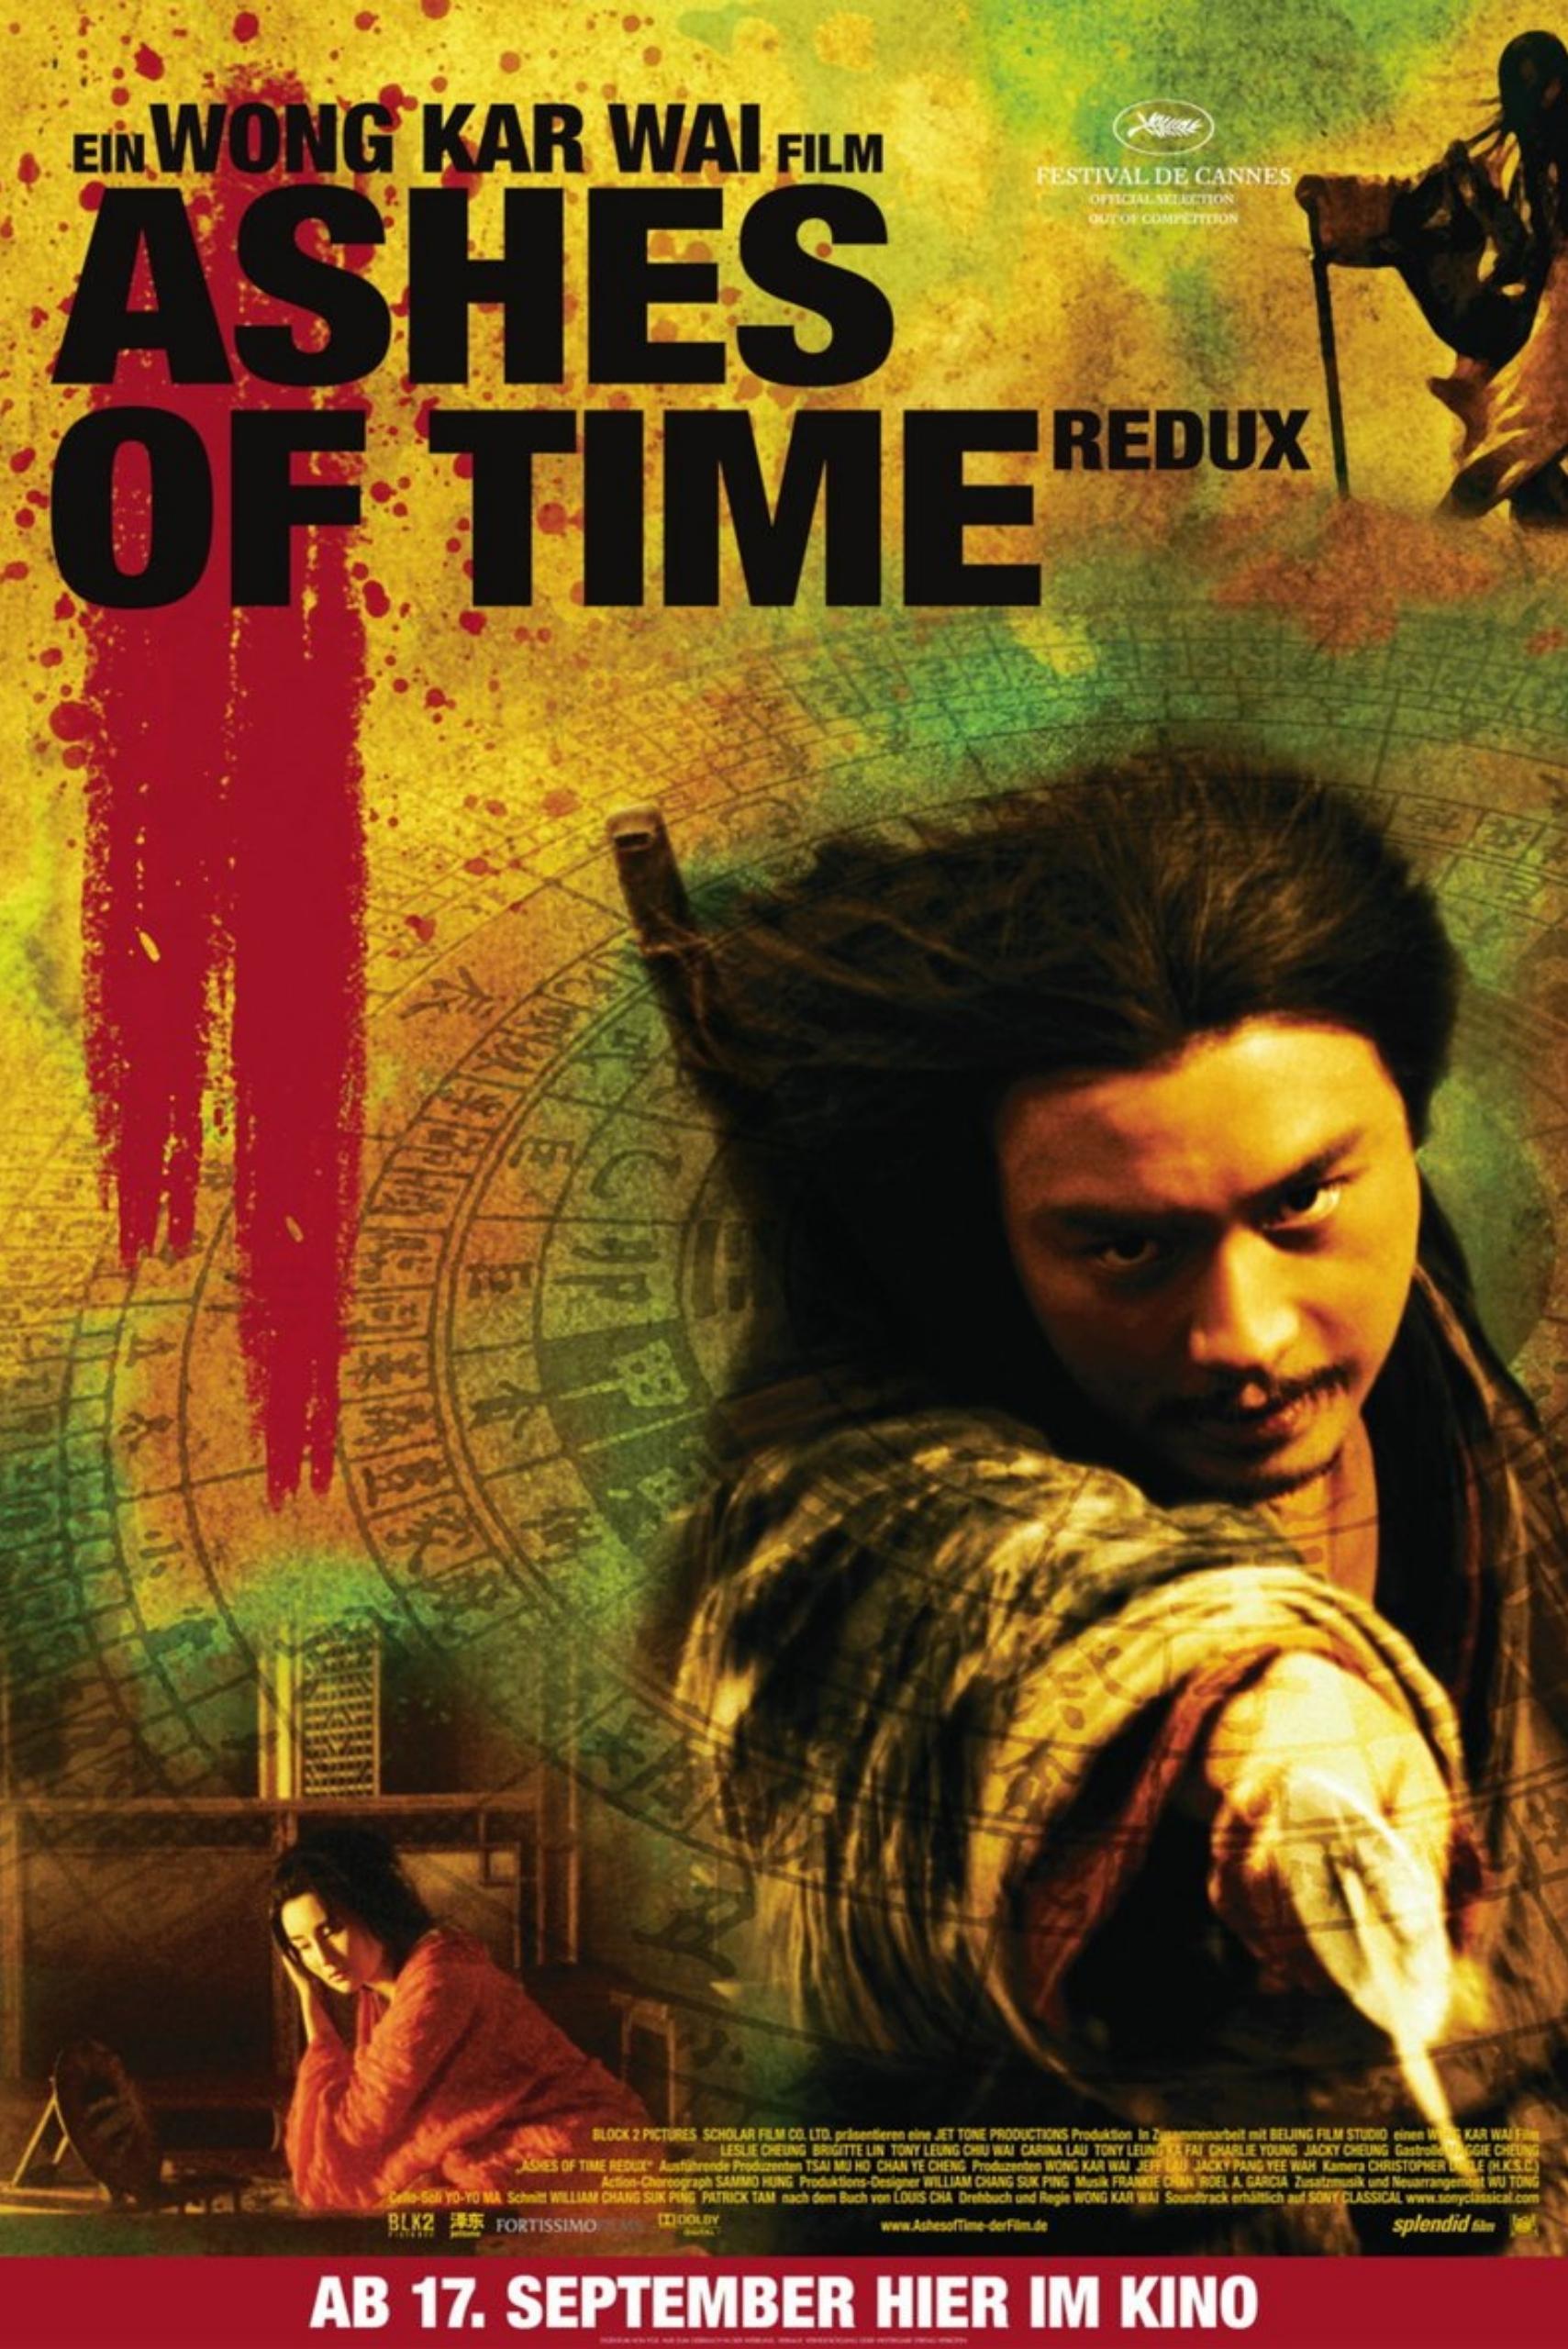 poster phim Hồng Kông Ashes of Time do Vương Gia Vệ làm đạo diễn với sự tham gia của Trương Quốc Vinh